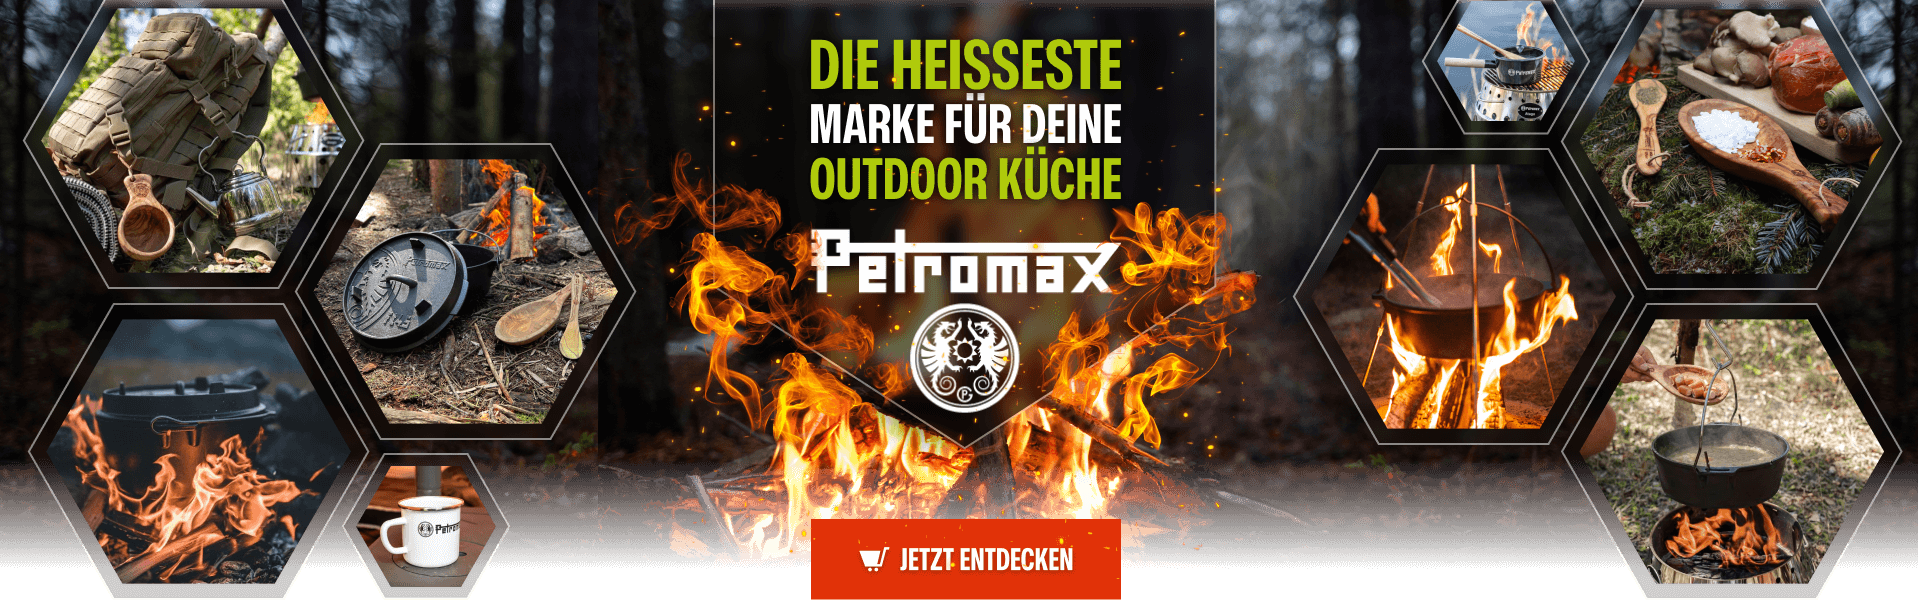 Die heißeste Marke für Outdoor-Kücke - Petromax: jetzt im bw-online-shop bestellen!